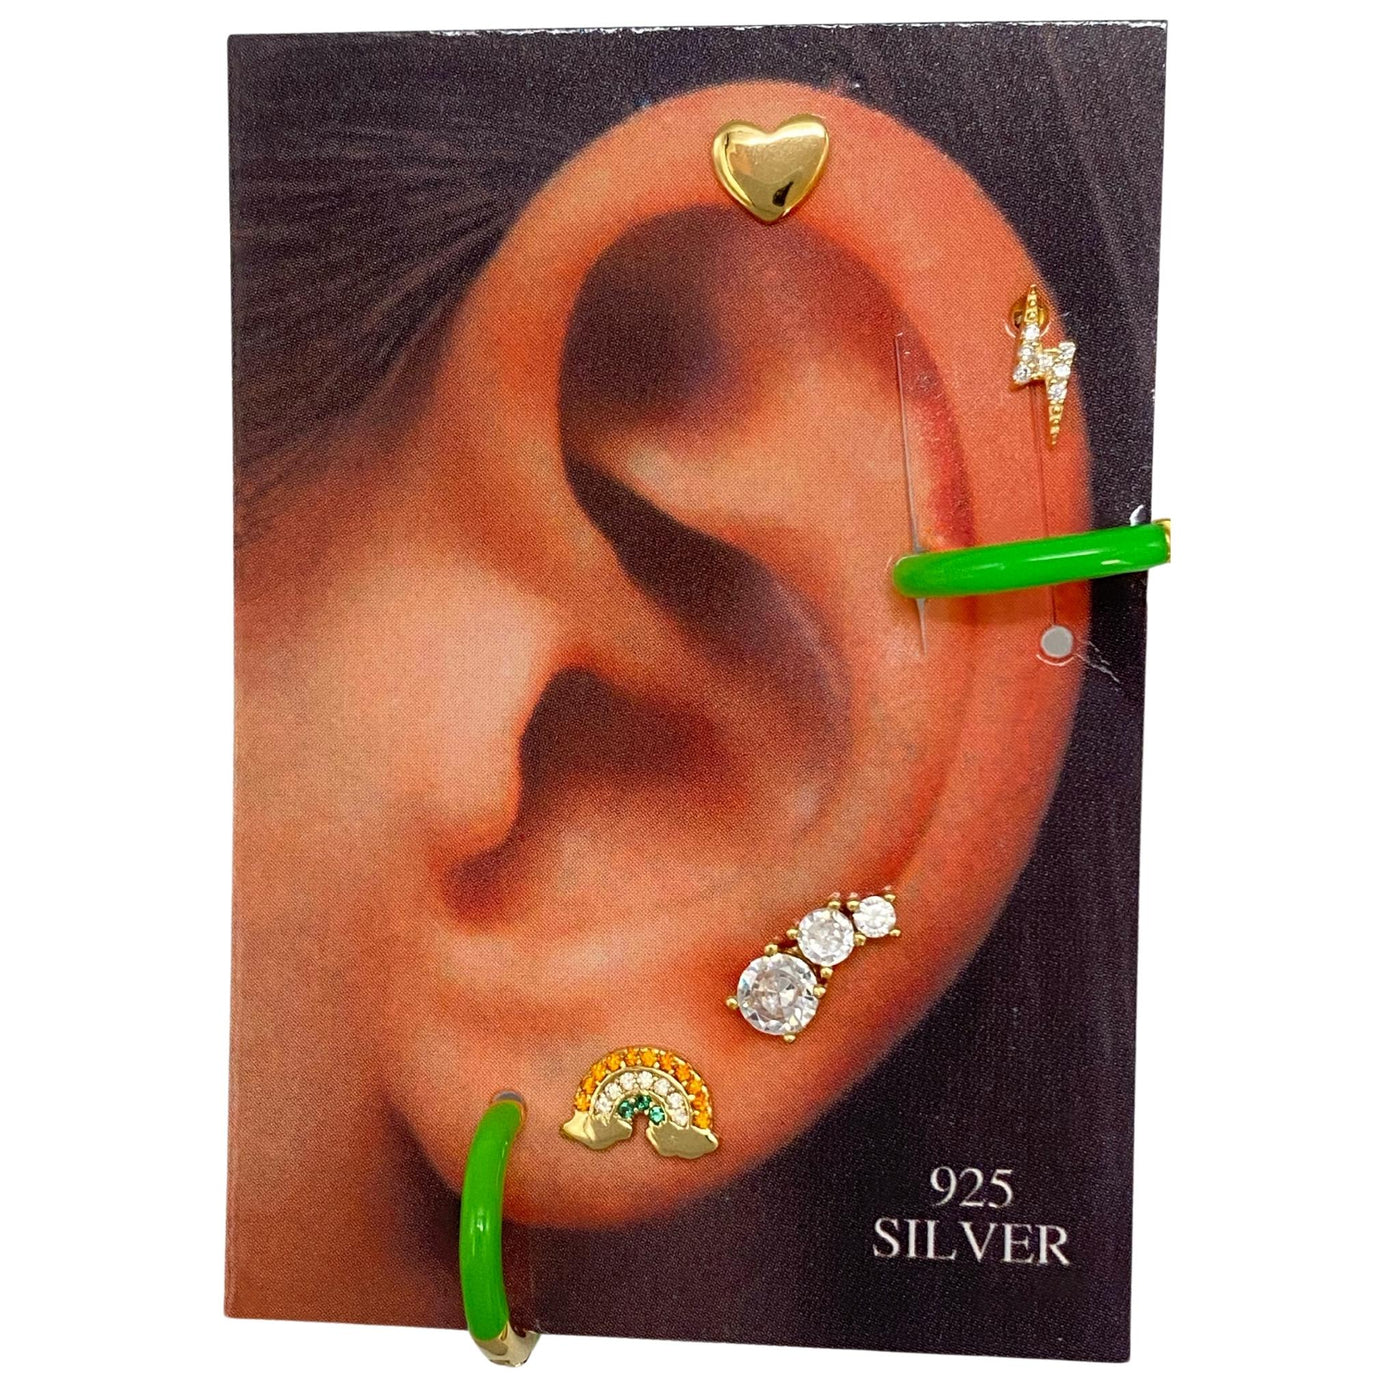 Silver stud earring set